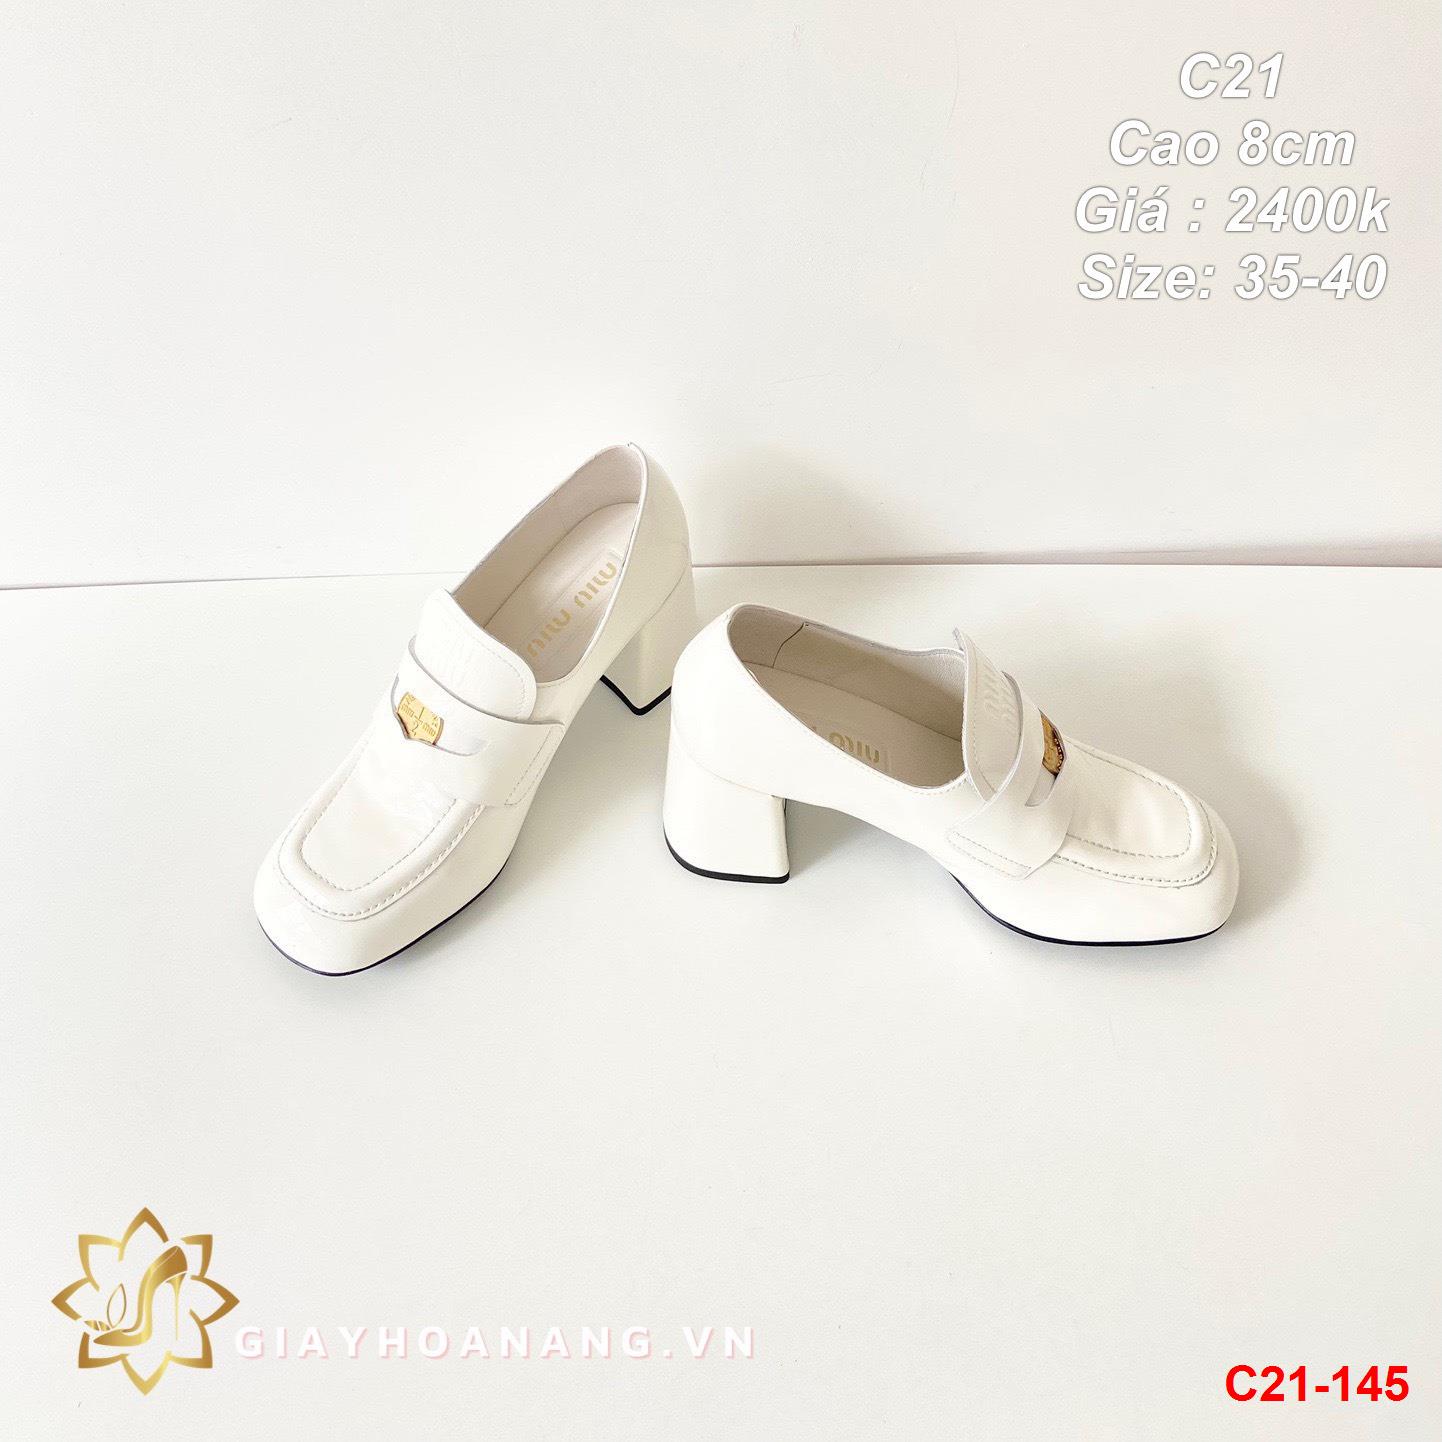 C21-145 Miu miu giày cao 8cm siêu cấp